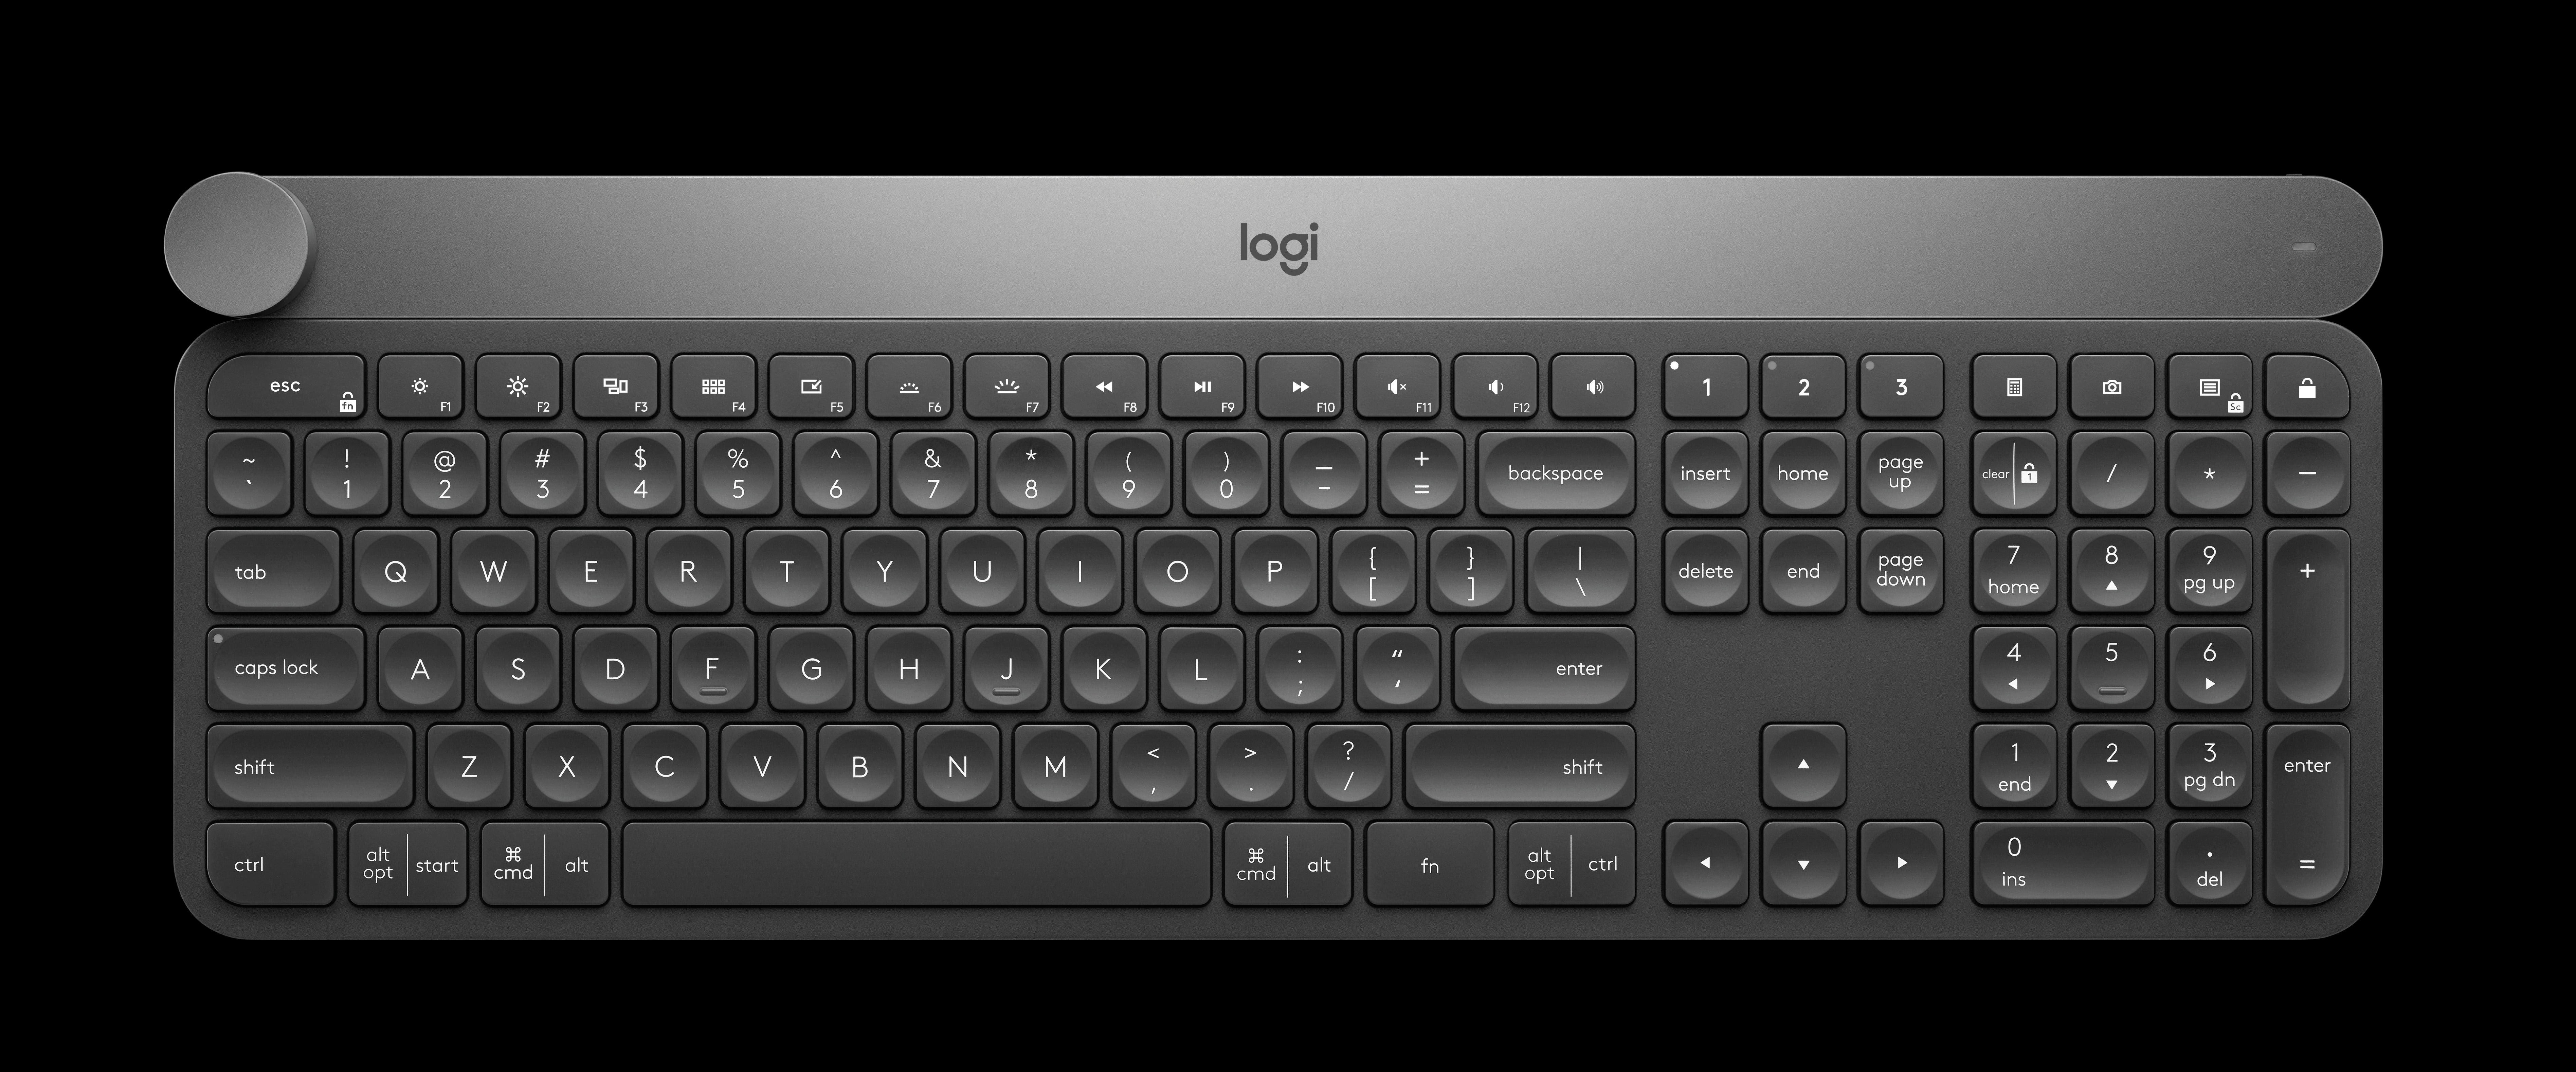 keyboard layout